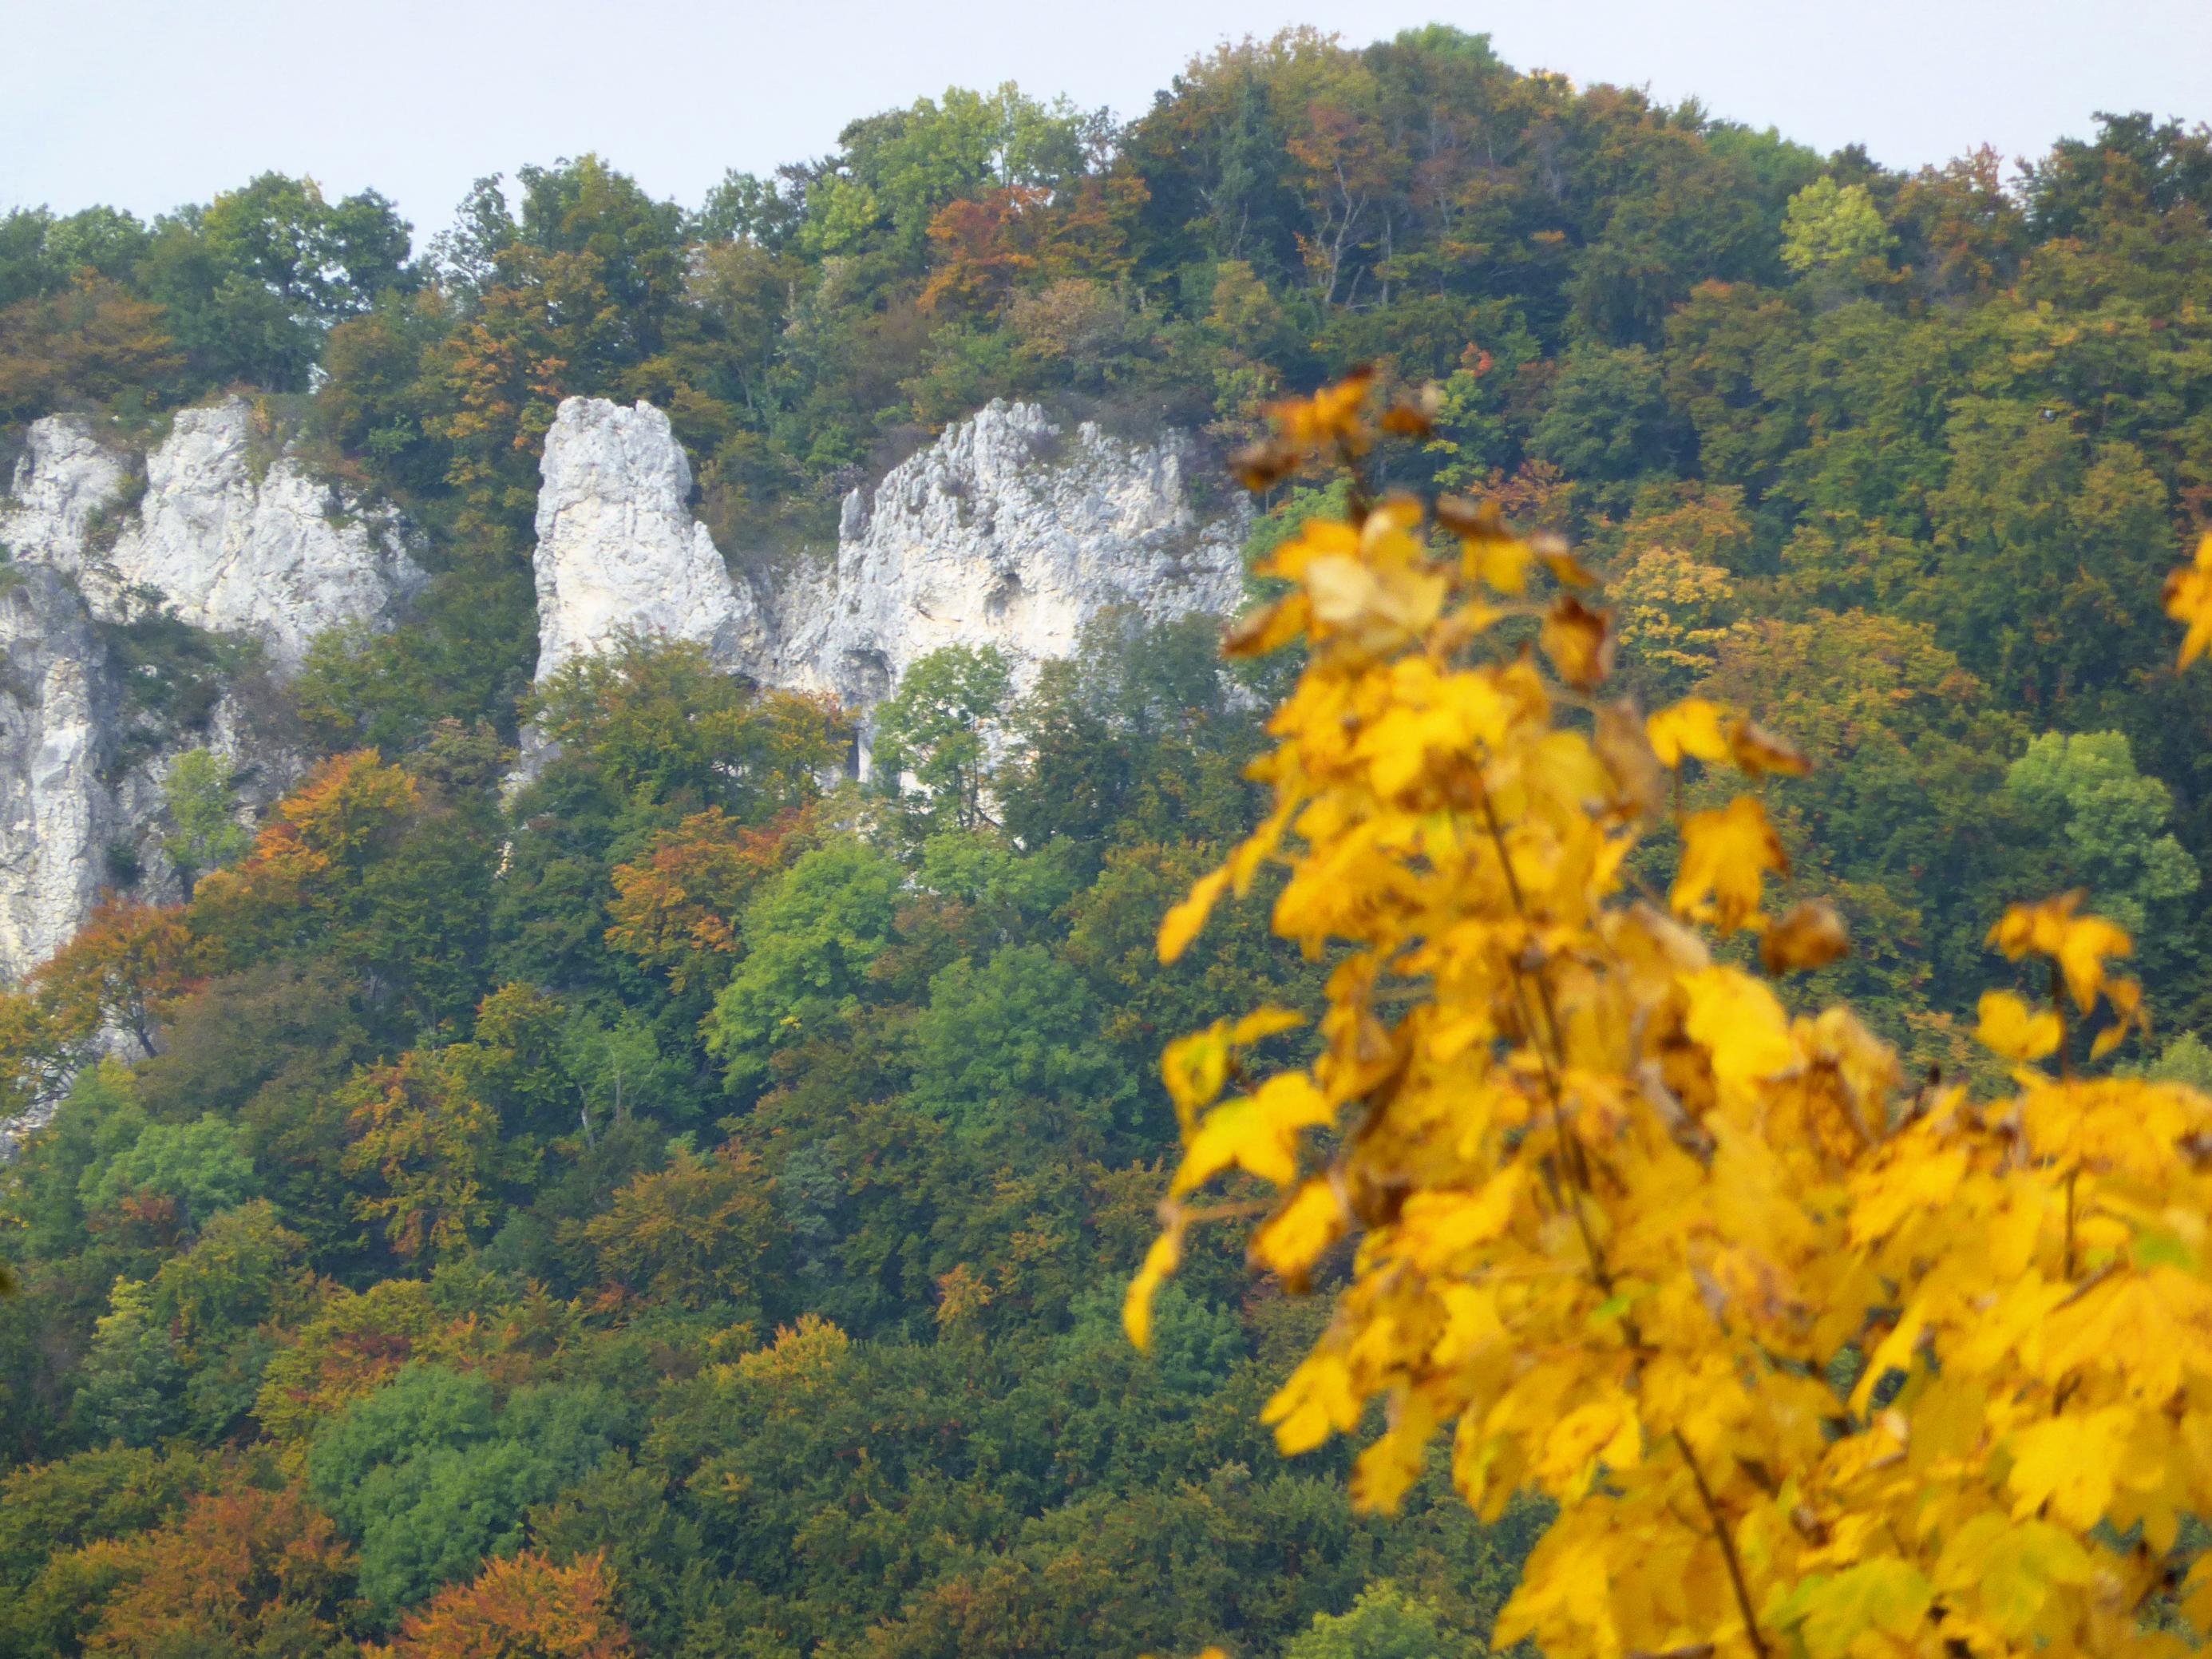 Helle Kalkfelsen schimmern in einer Steilwand zwischen Bäumen in bunter Herbsttracht hindurch.